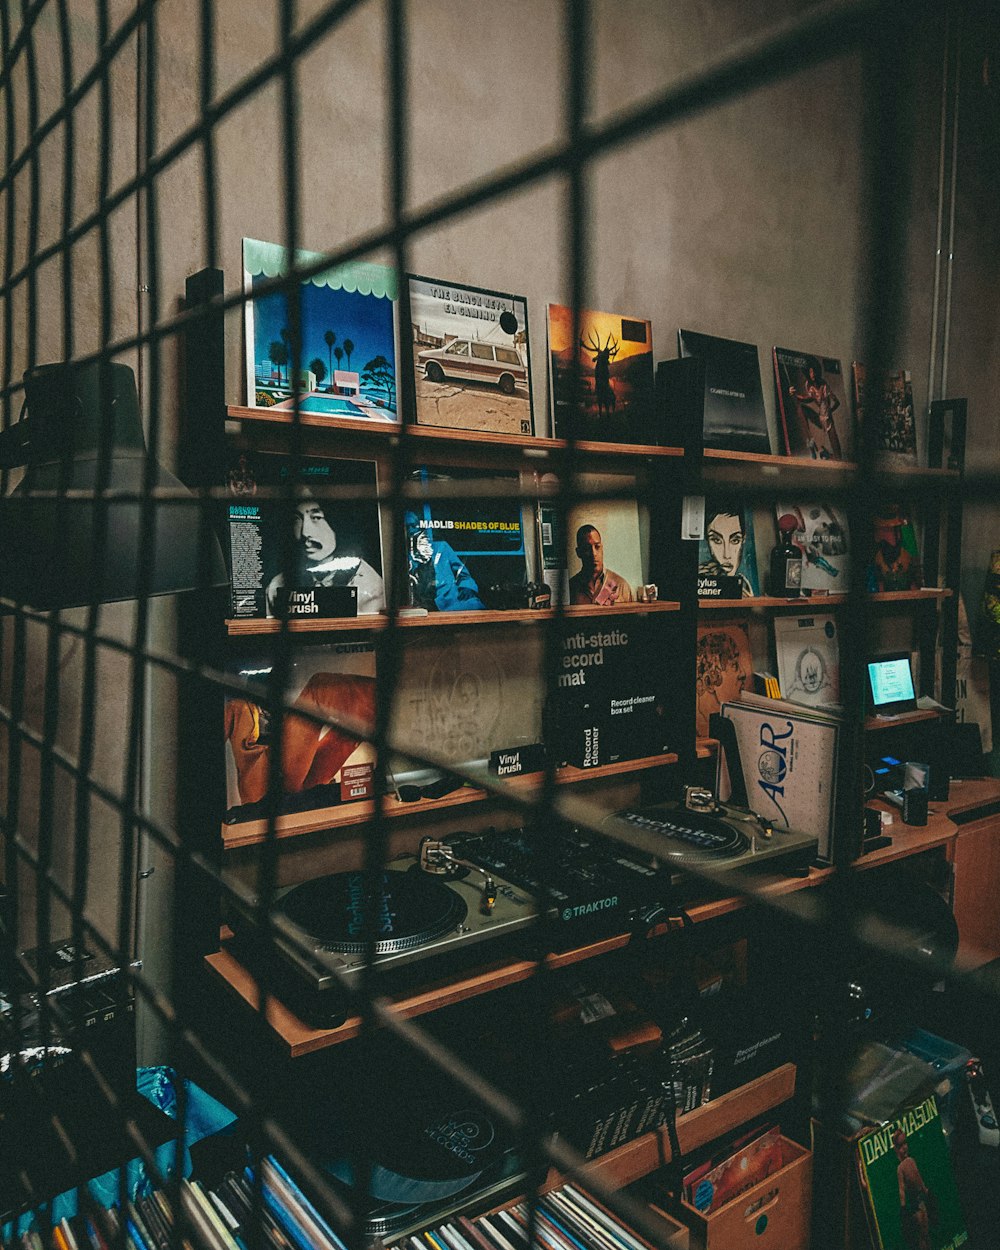 Una habitación con muchos libros y CDs en un estante